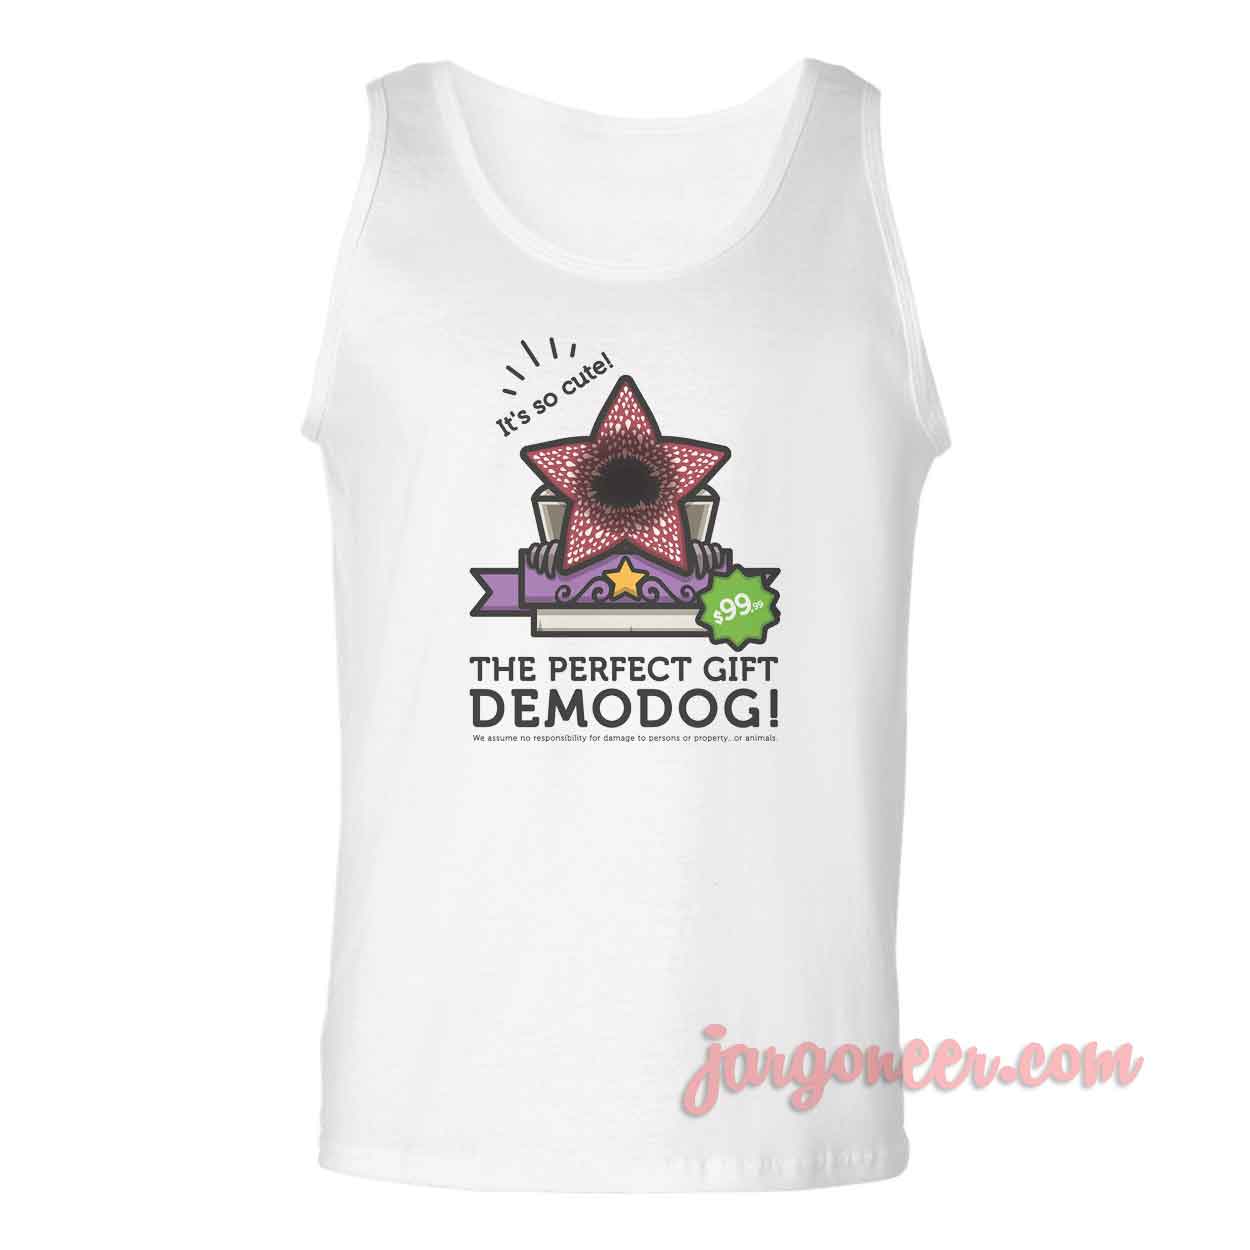 Perfect Demodog - Shop Unique Graphic Cool Shirt Designs